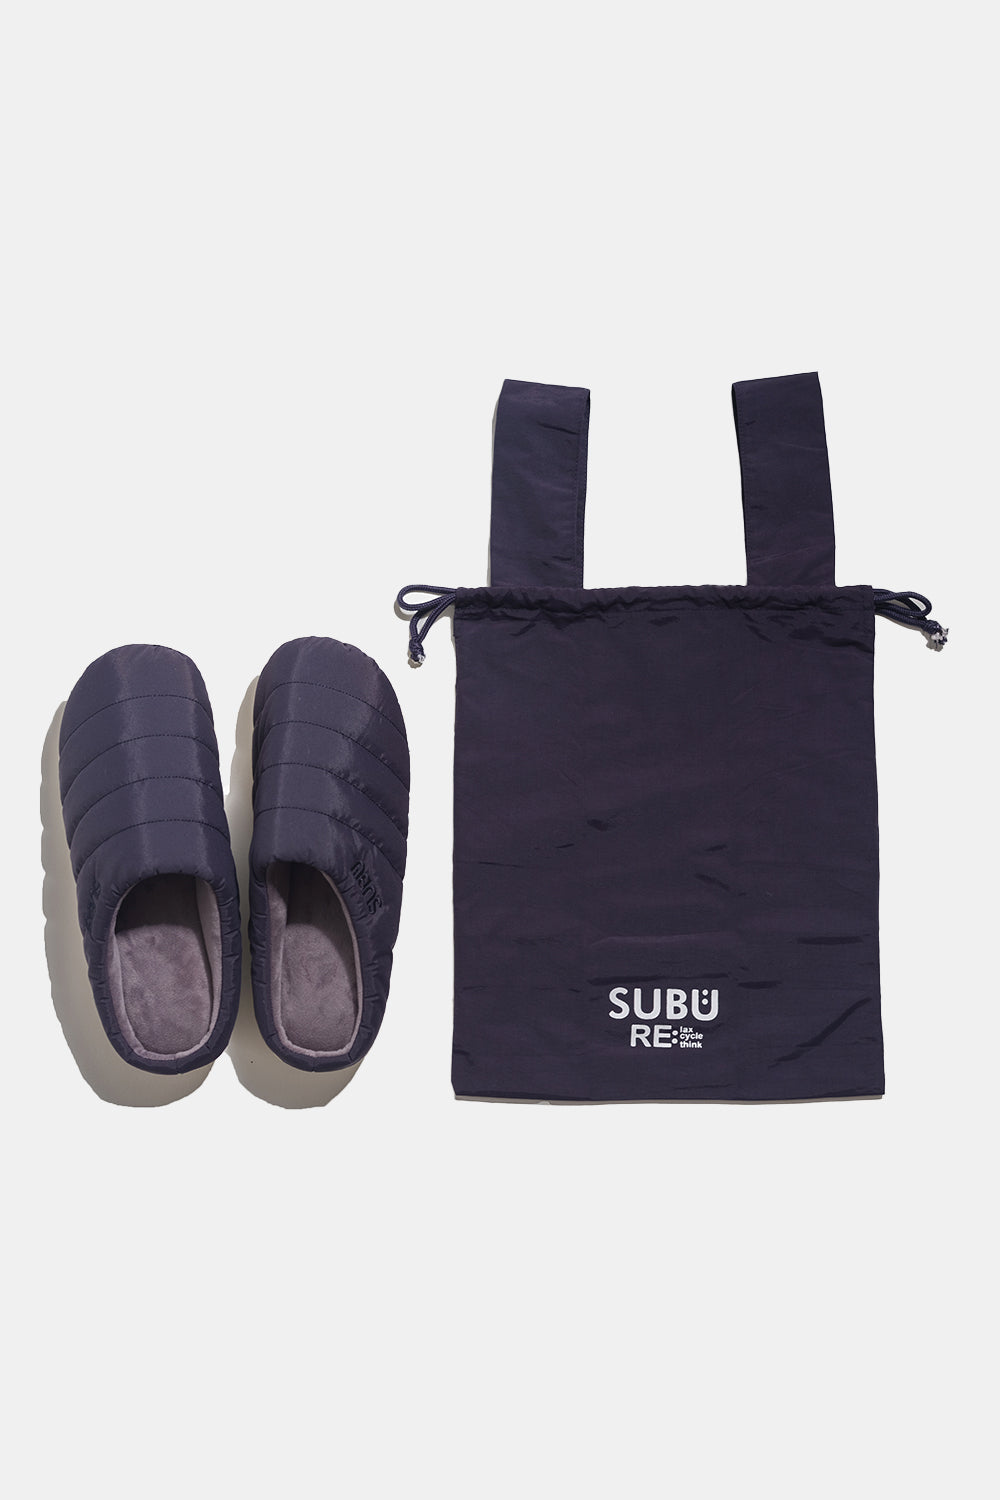 SUBU Indoor Outdoor Re: Slippers (Black) | Number Six